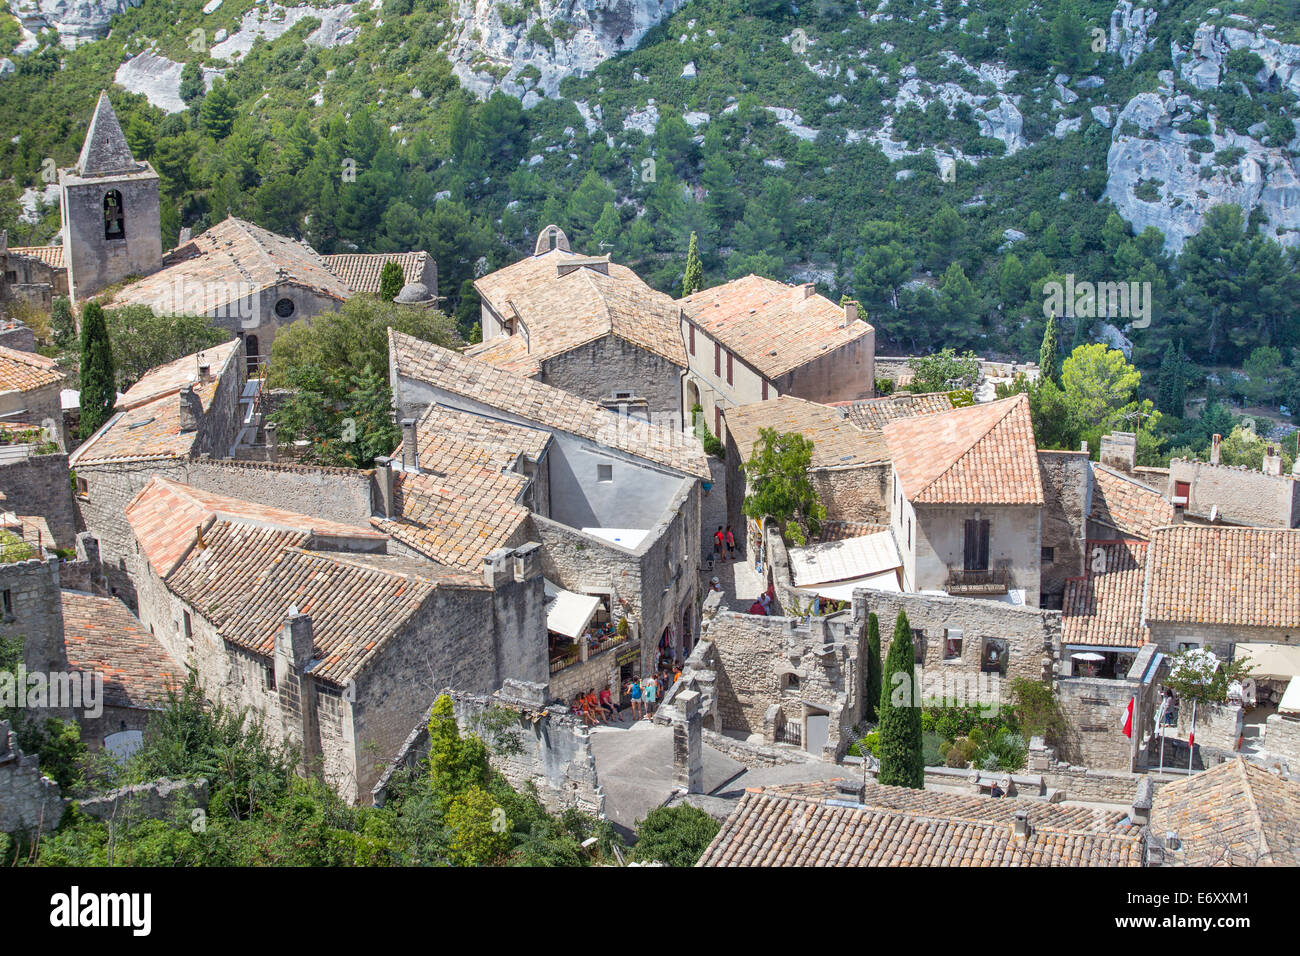 Grazioso villaggio sulla collina di Les Baux de Provence, Provenza, Francia Foto Stock